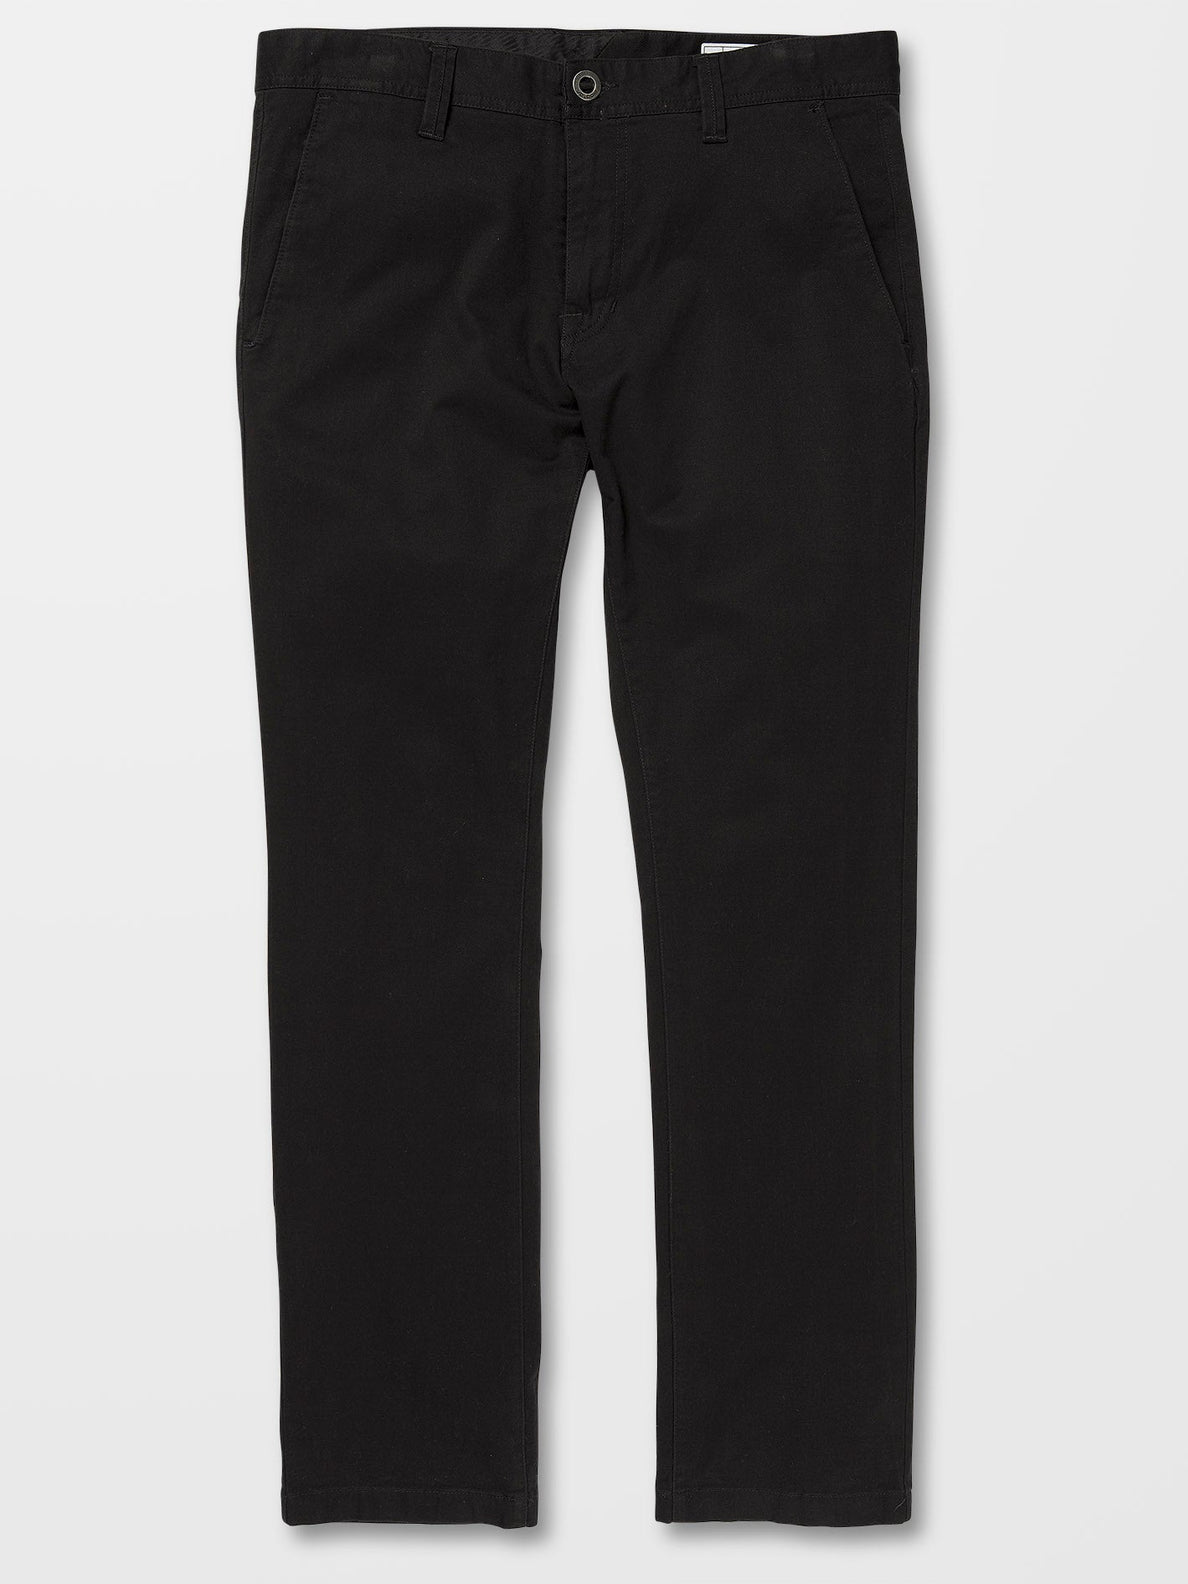 Pantalon Volcom Frickin Slim Chino - Black | Pantalones chinos de hombre | Todos los pantalones de hombre | Volcom Shop | surfdevils.com